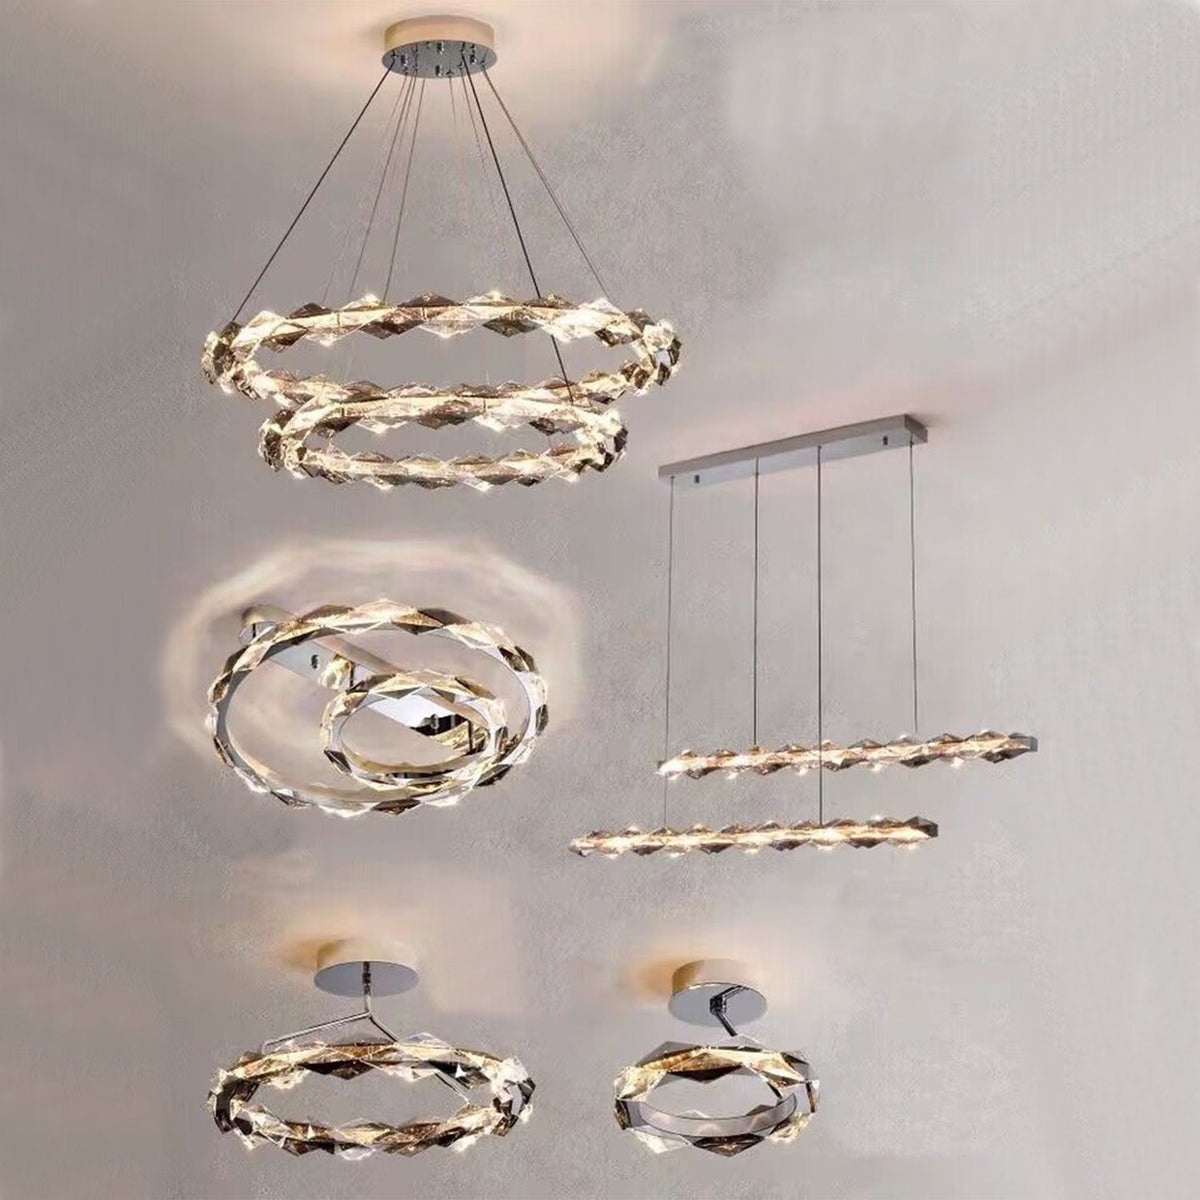 Olivialamps New Flush Mount Art Crystal Light Fixture Modern Round Designer Pendant Light For Living Room/Dining Room